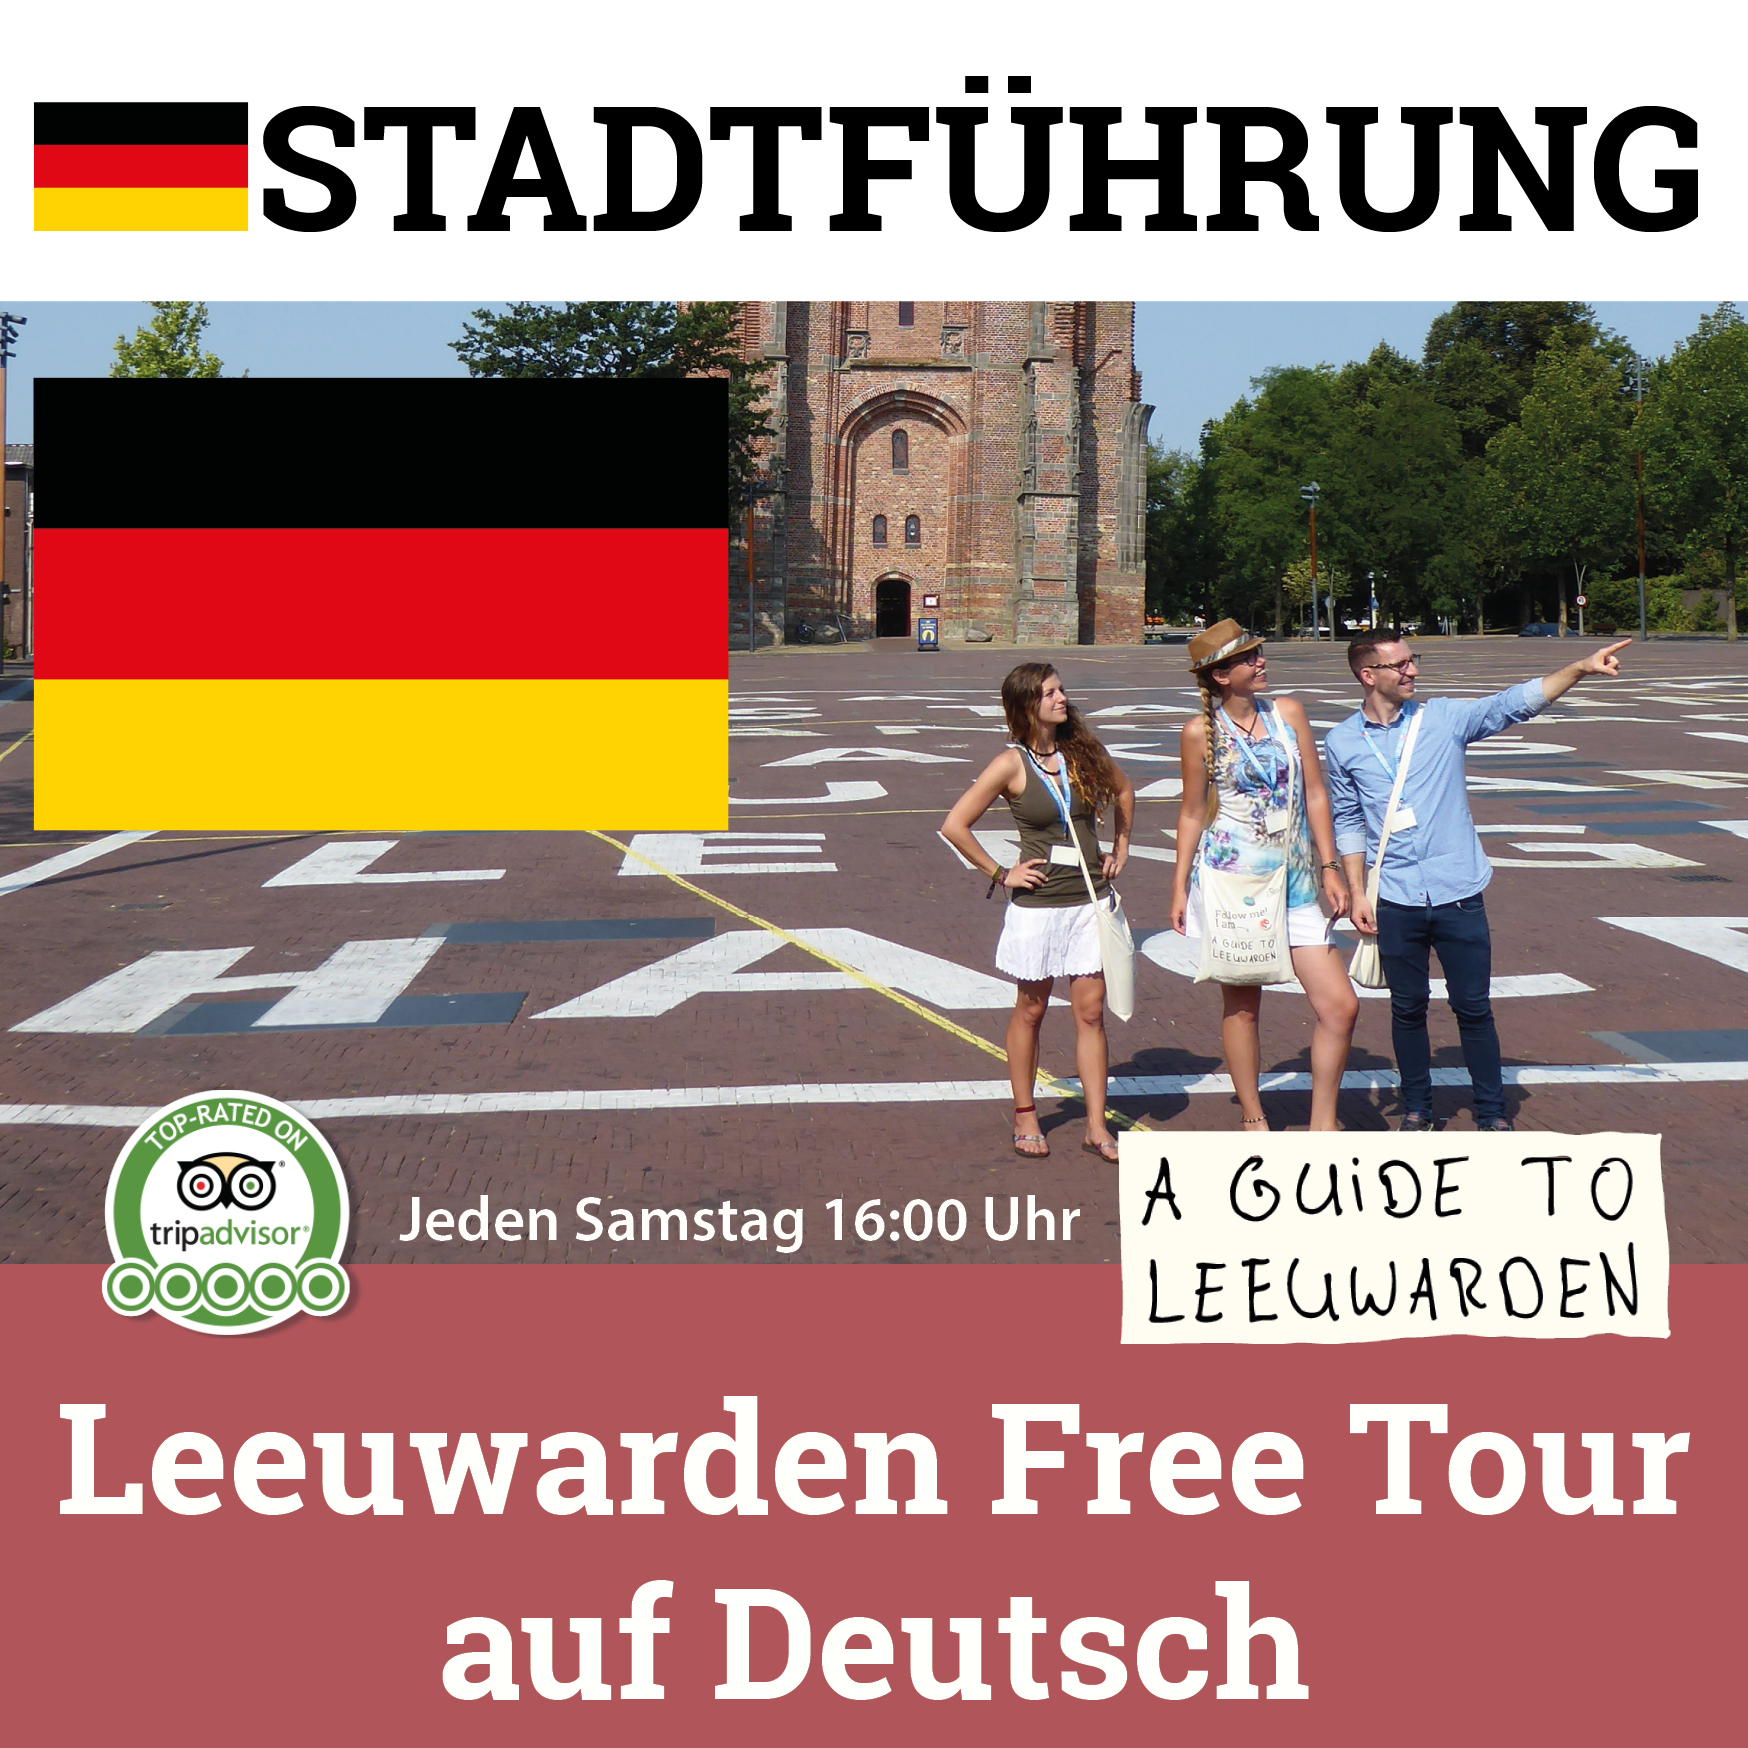 sightseeing tour auf deutsch